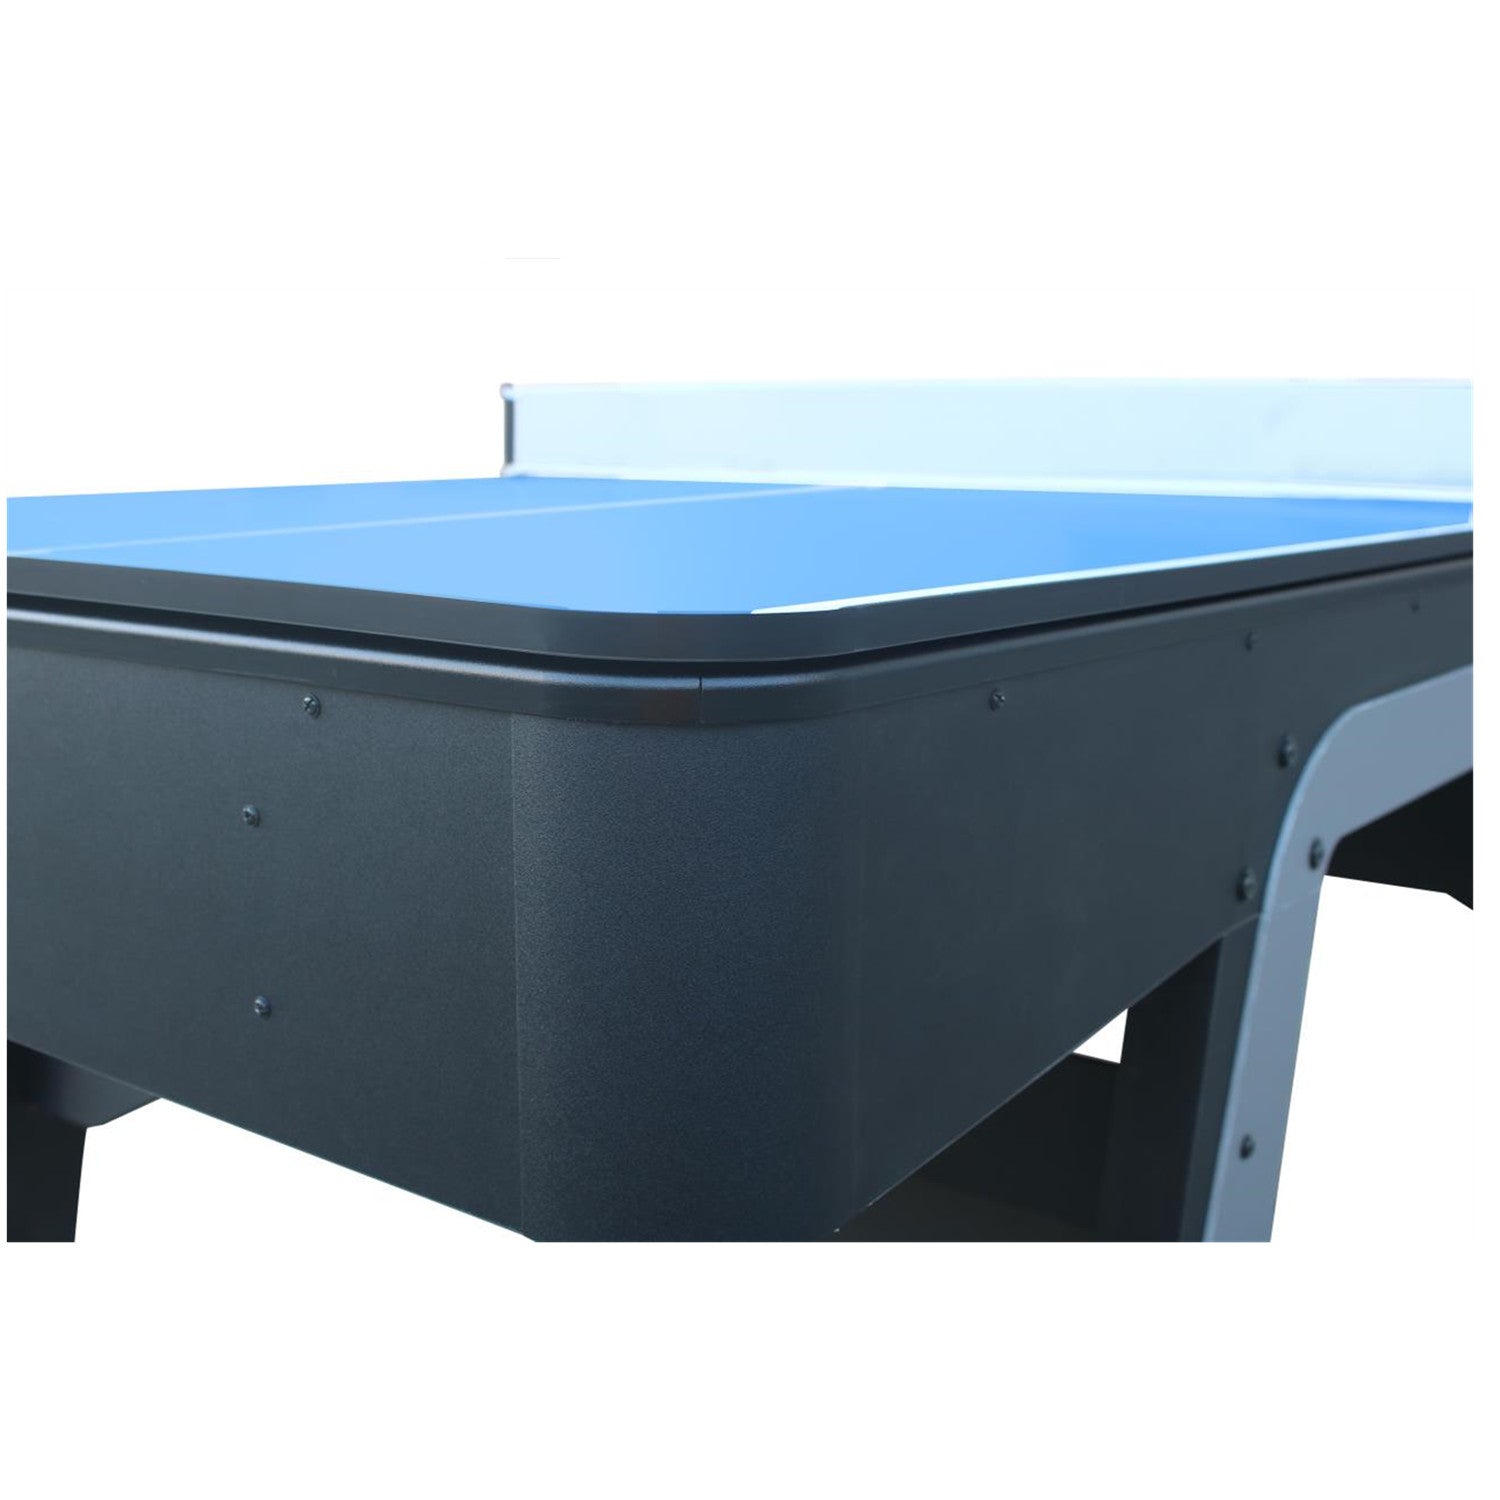 StarTrek 3IN1 Pool Table-8FT Red/Top Storage